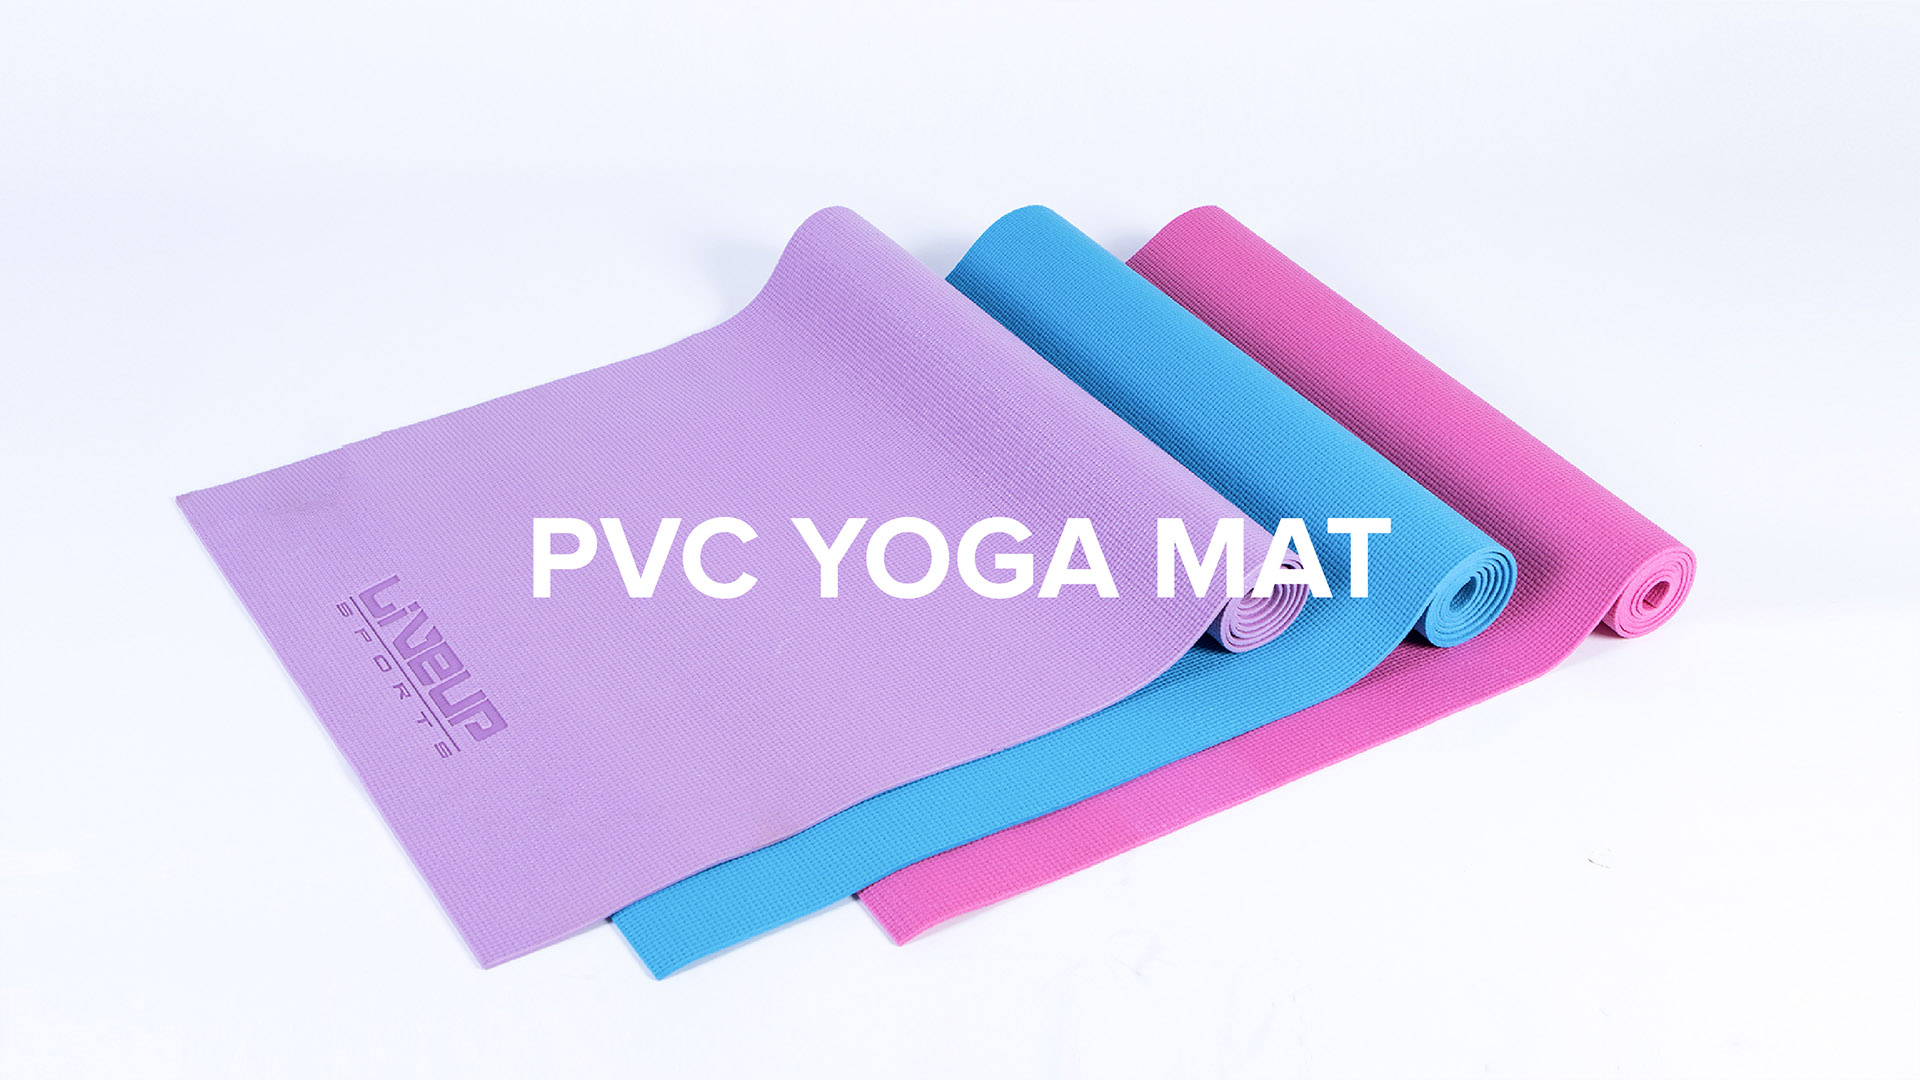 Kit Tapete para Yoga em PVC + Bola de Pilates 65cm - Muvin - KIT-00250